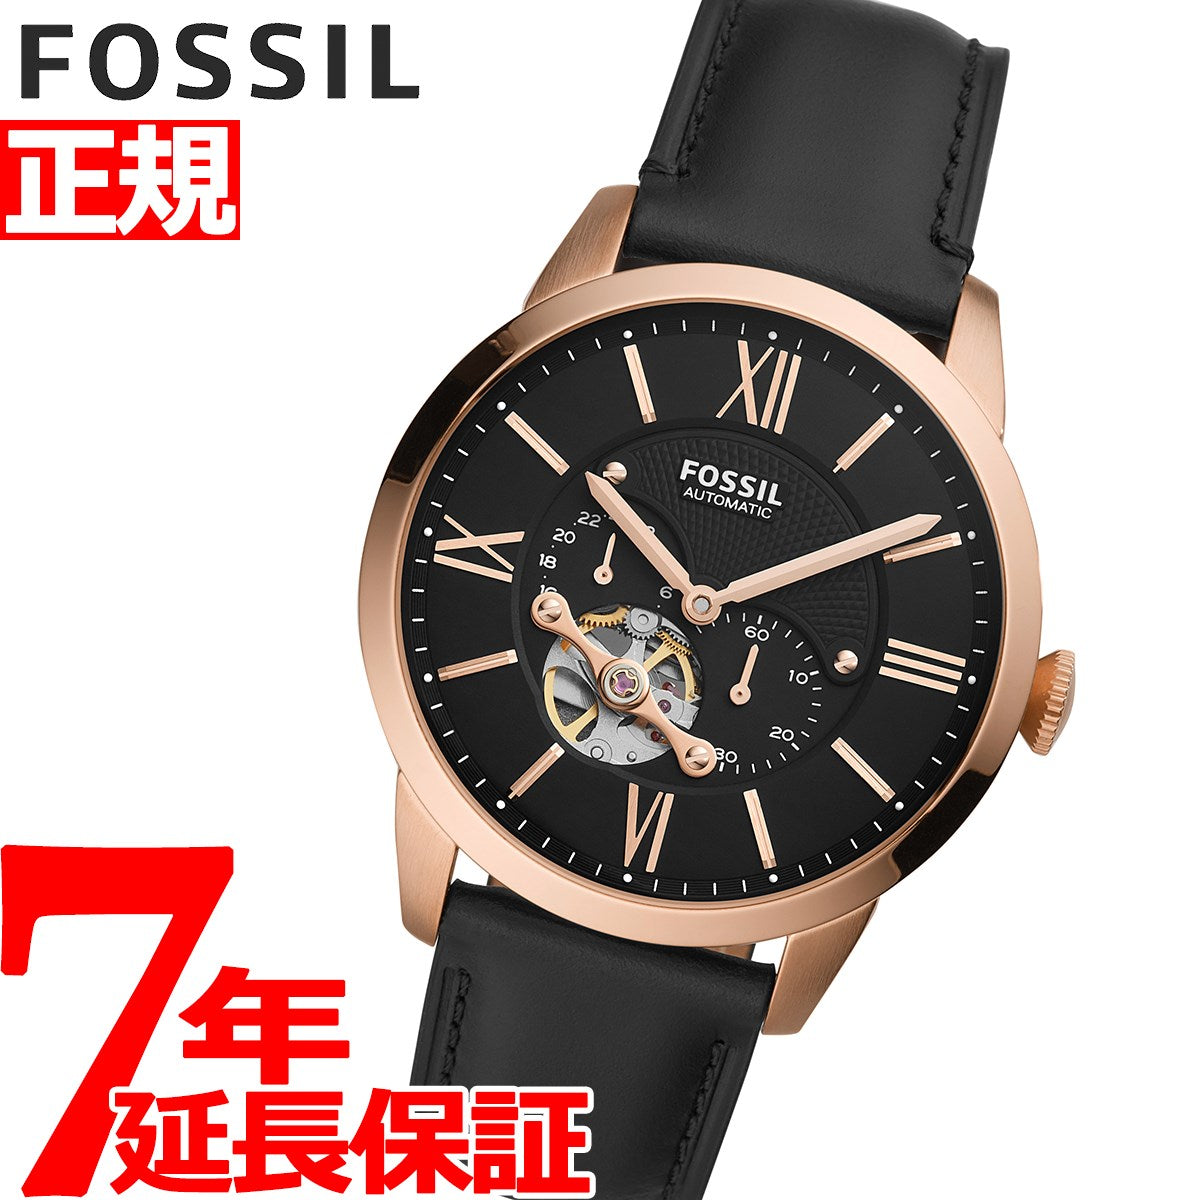 FOSSIL 腕時計 自動巻き 44mm自動巻き - 腕時計(アナログ)